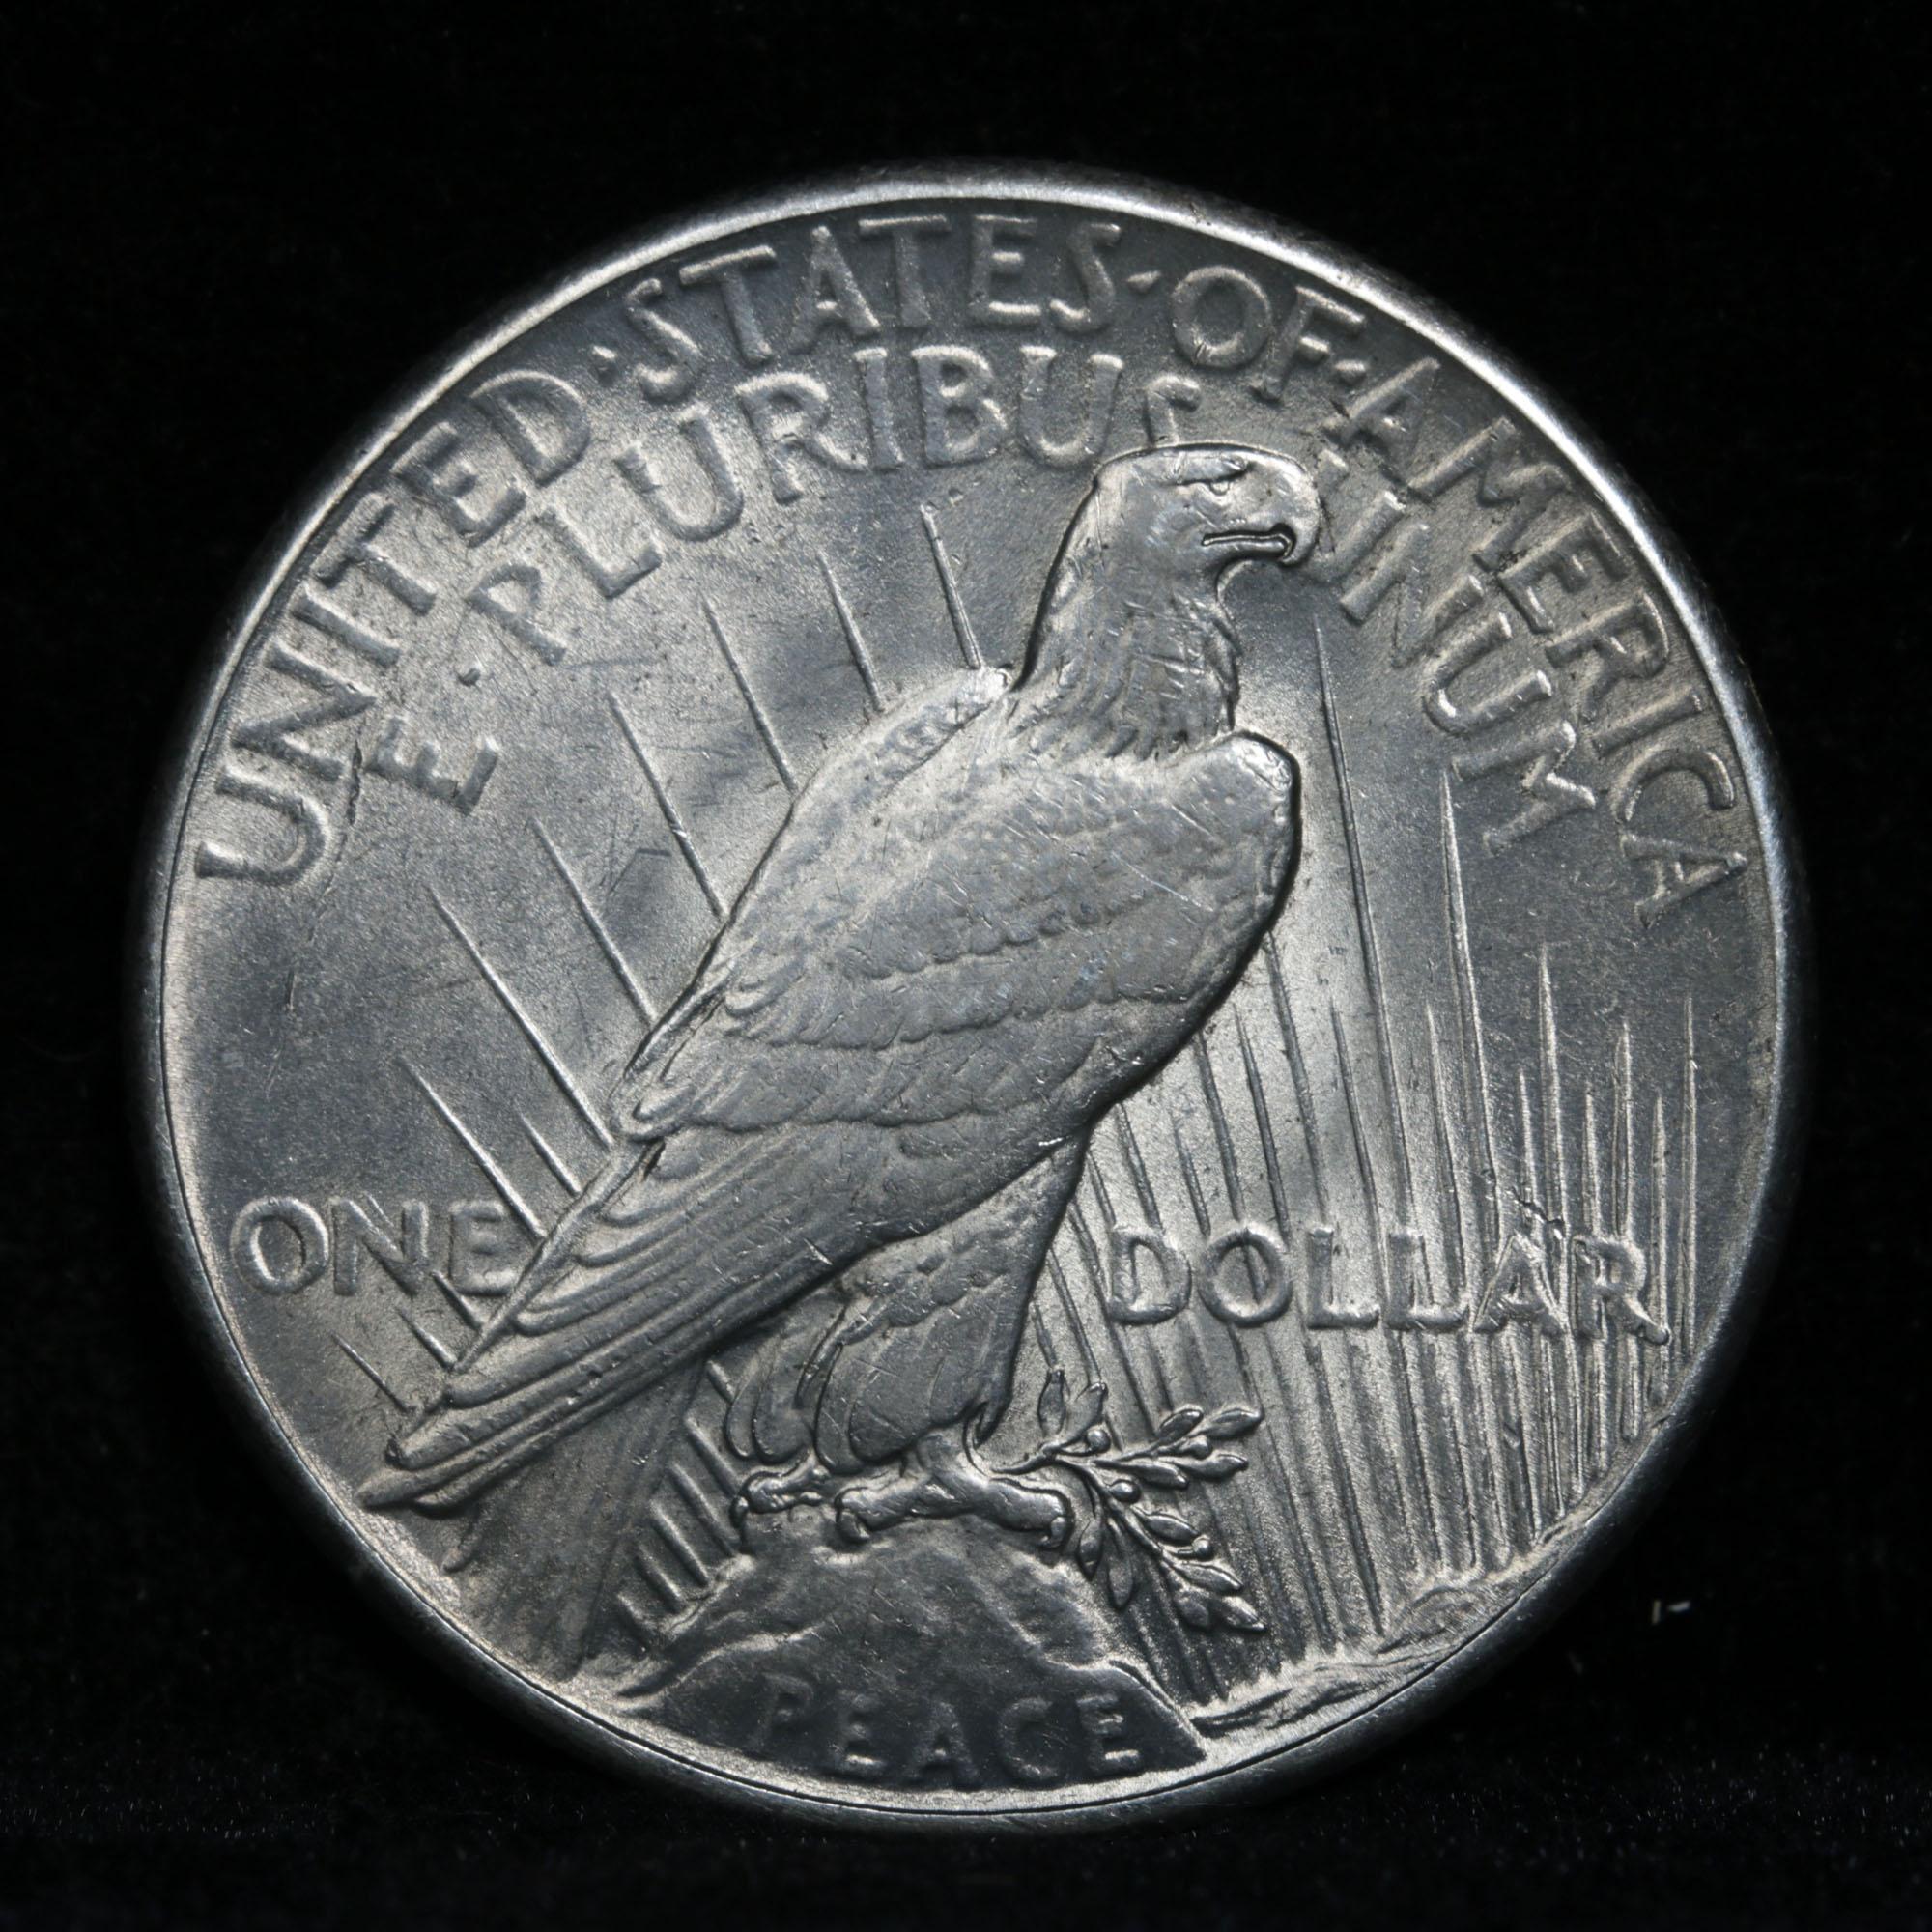 ***Auction Highlight*** 1928-p Peace Dollar $1 Graded Choice Unc By USCG (fc)